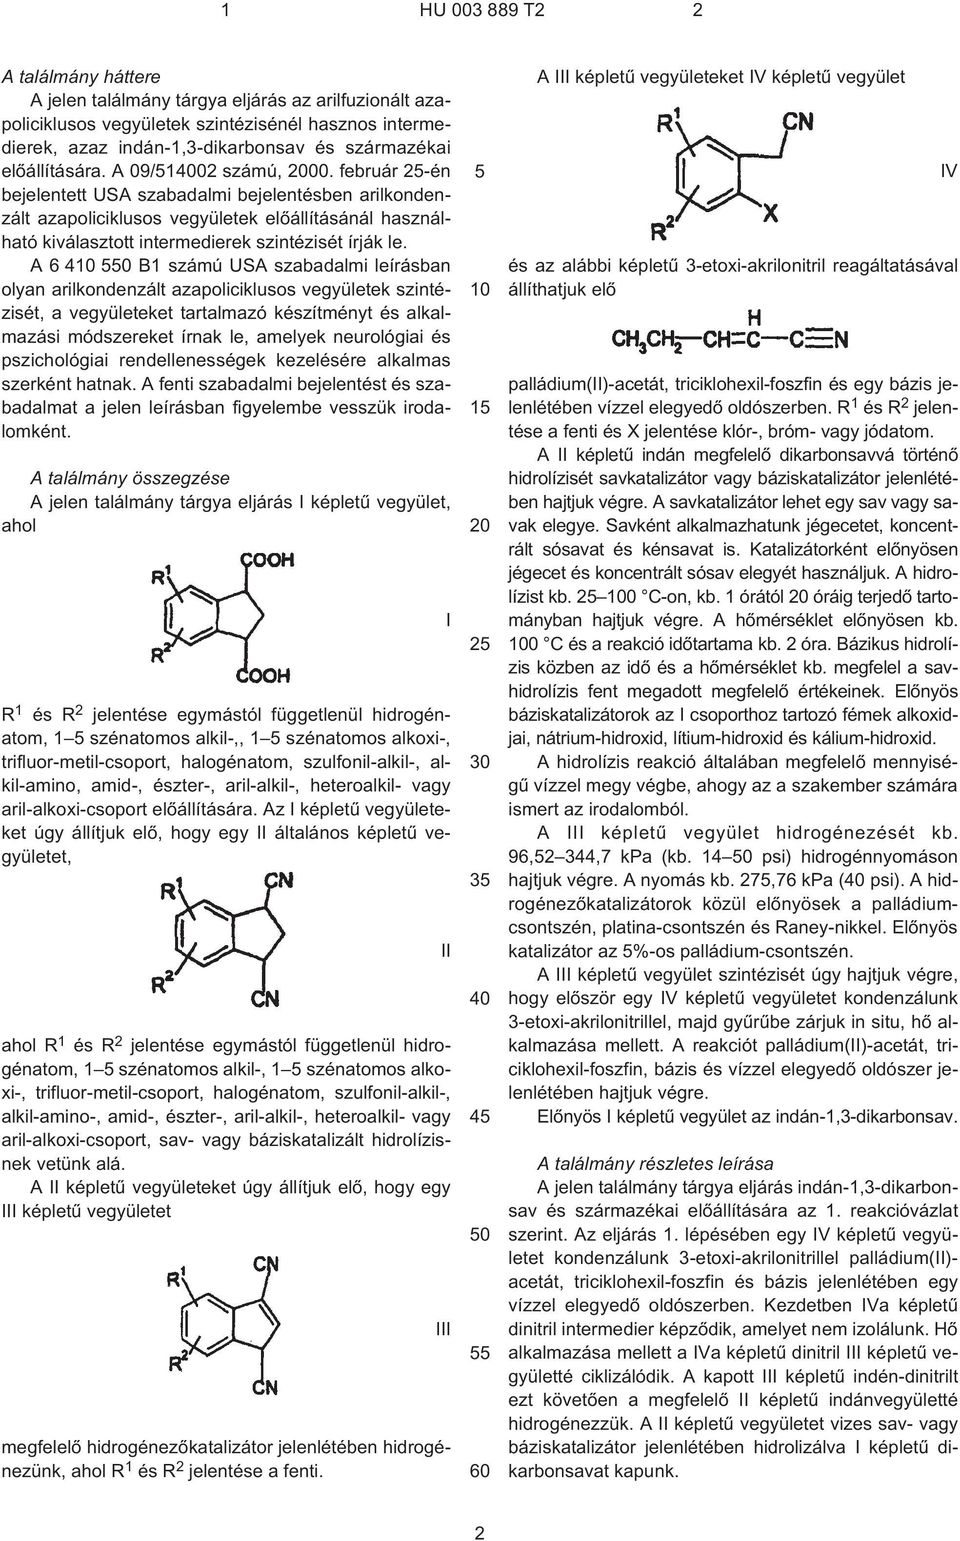 A 6 4 0 B1 számú USA szabadalmi leírásban olyan arilkondenzált azapoliciklusos vegyületek szintézisét, a vegyületeket tartalmazó készítményt és alkalmazási módszereket írnak le, amelyek neurológiai